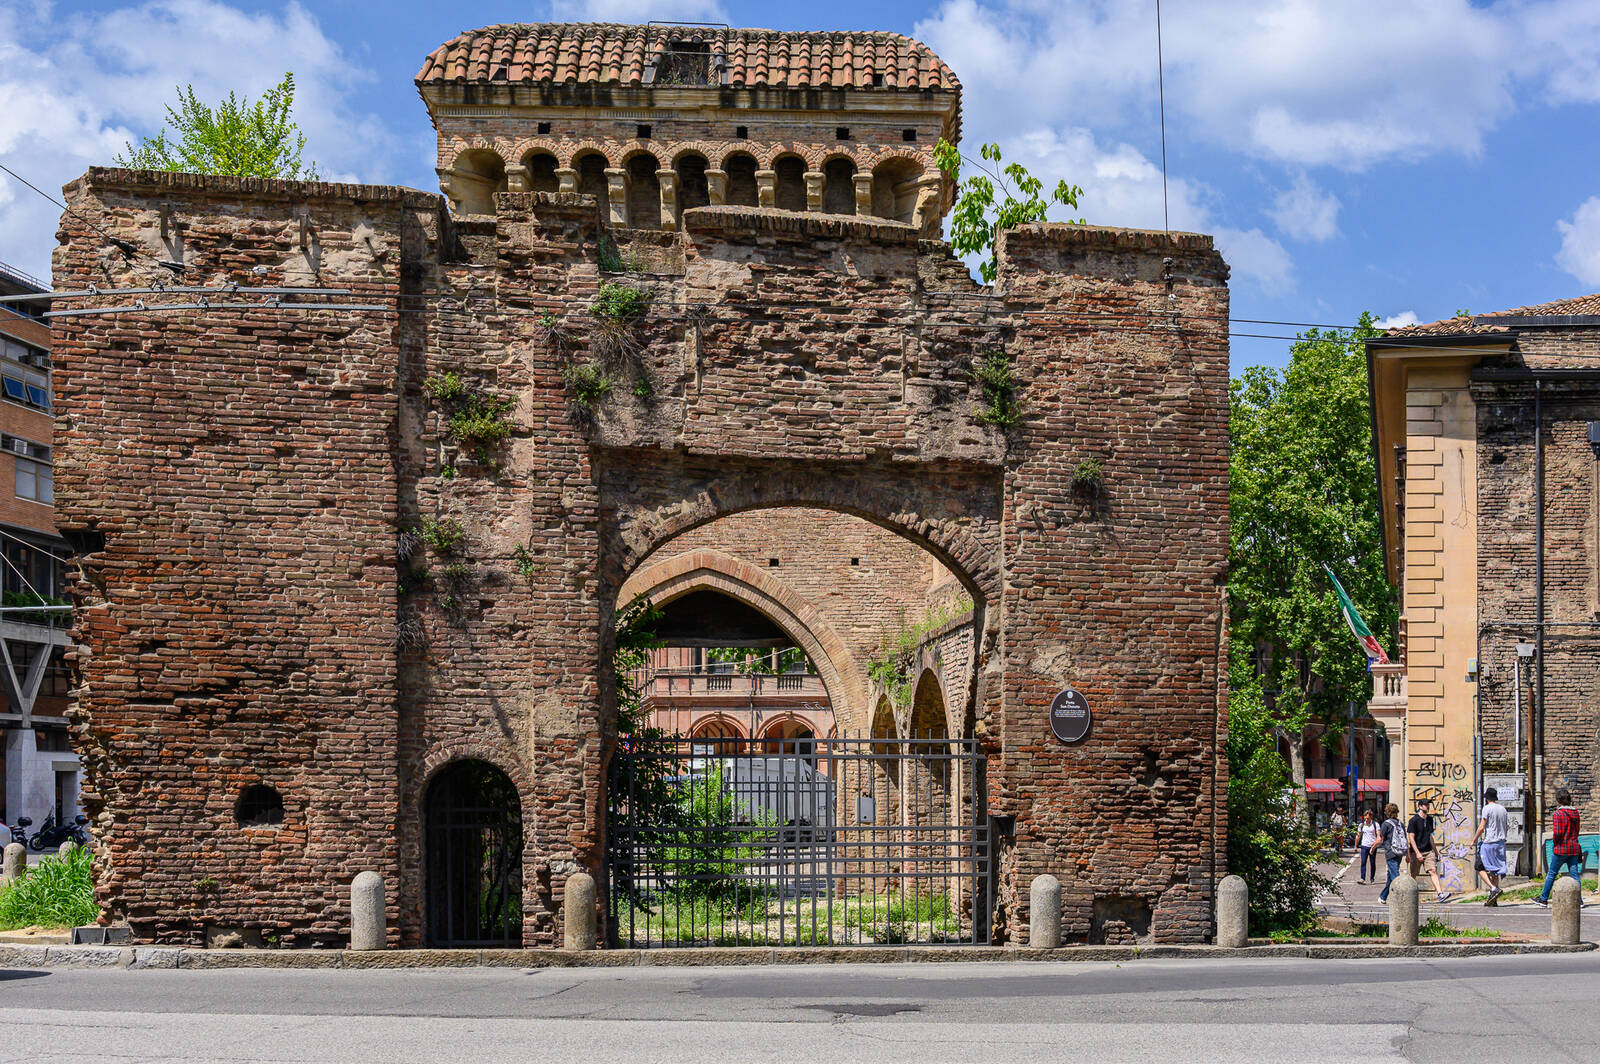 Image of Porta San Donato by Sue Wolfe